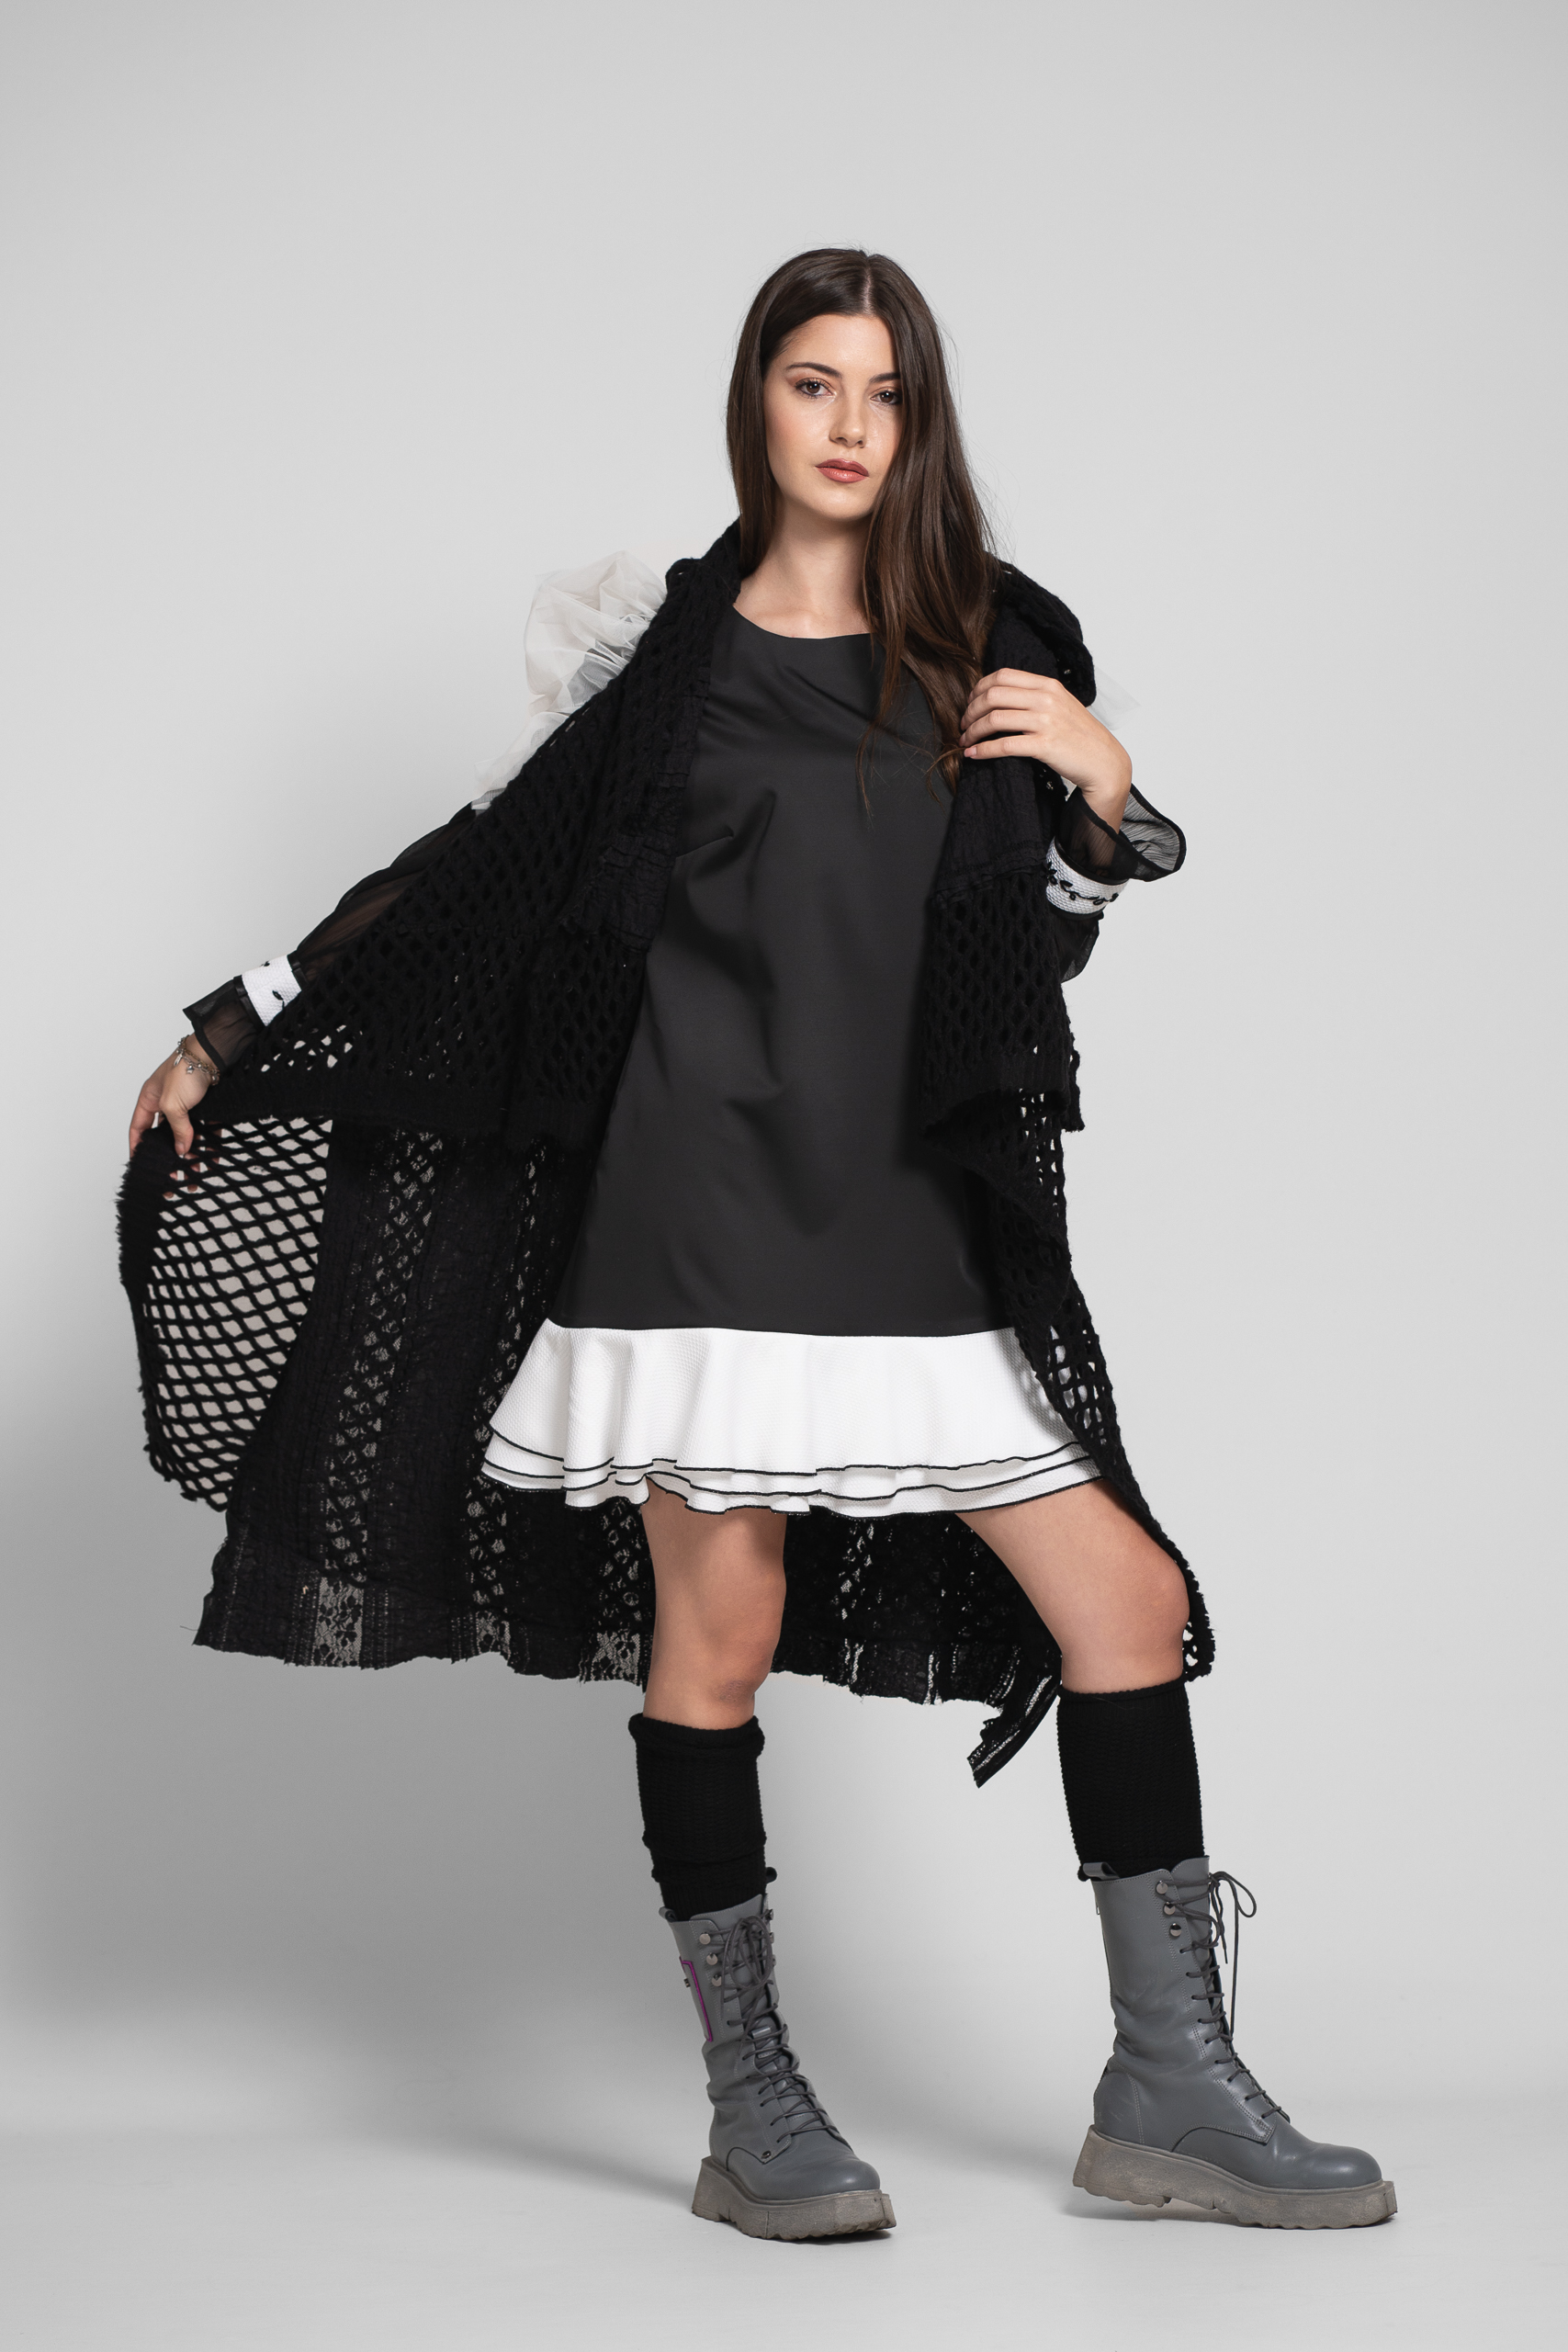 Vesta OISO statement neagra eleganta din tricot. Materiale naturale, design unicat, cu broderie si aplicatii handmade